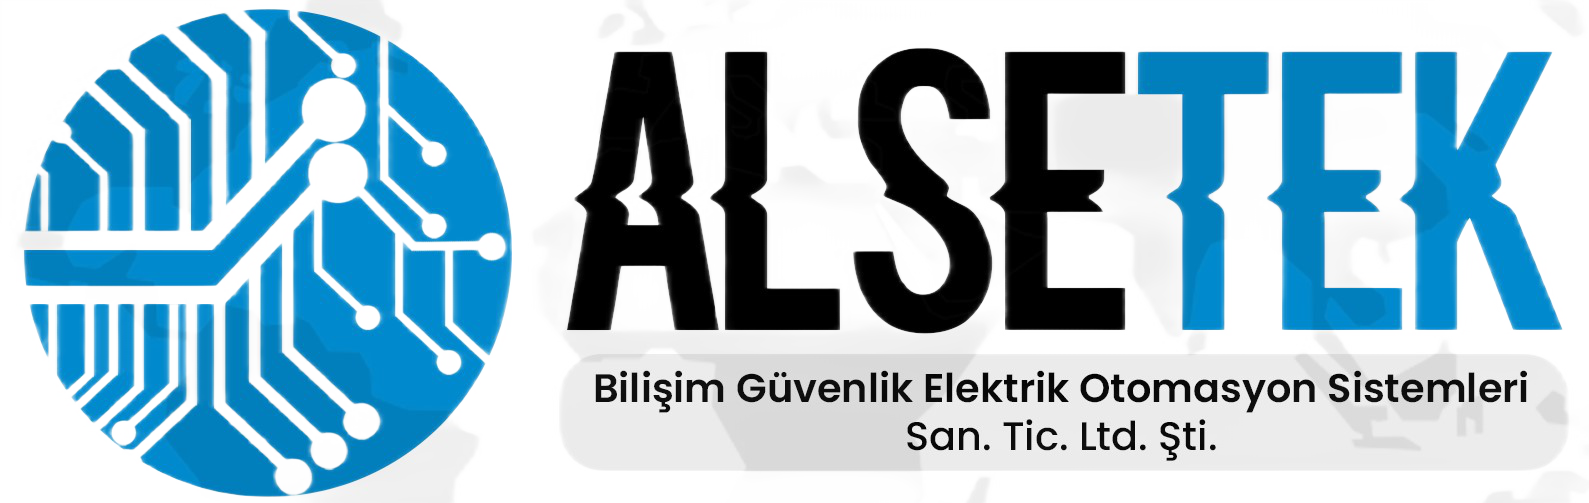 İstanbul Güvenlik & Kamera Sistemleri - Alsetek Bilişim